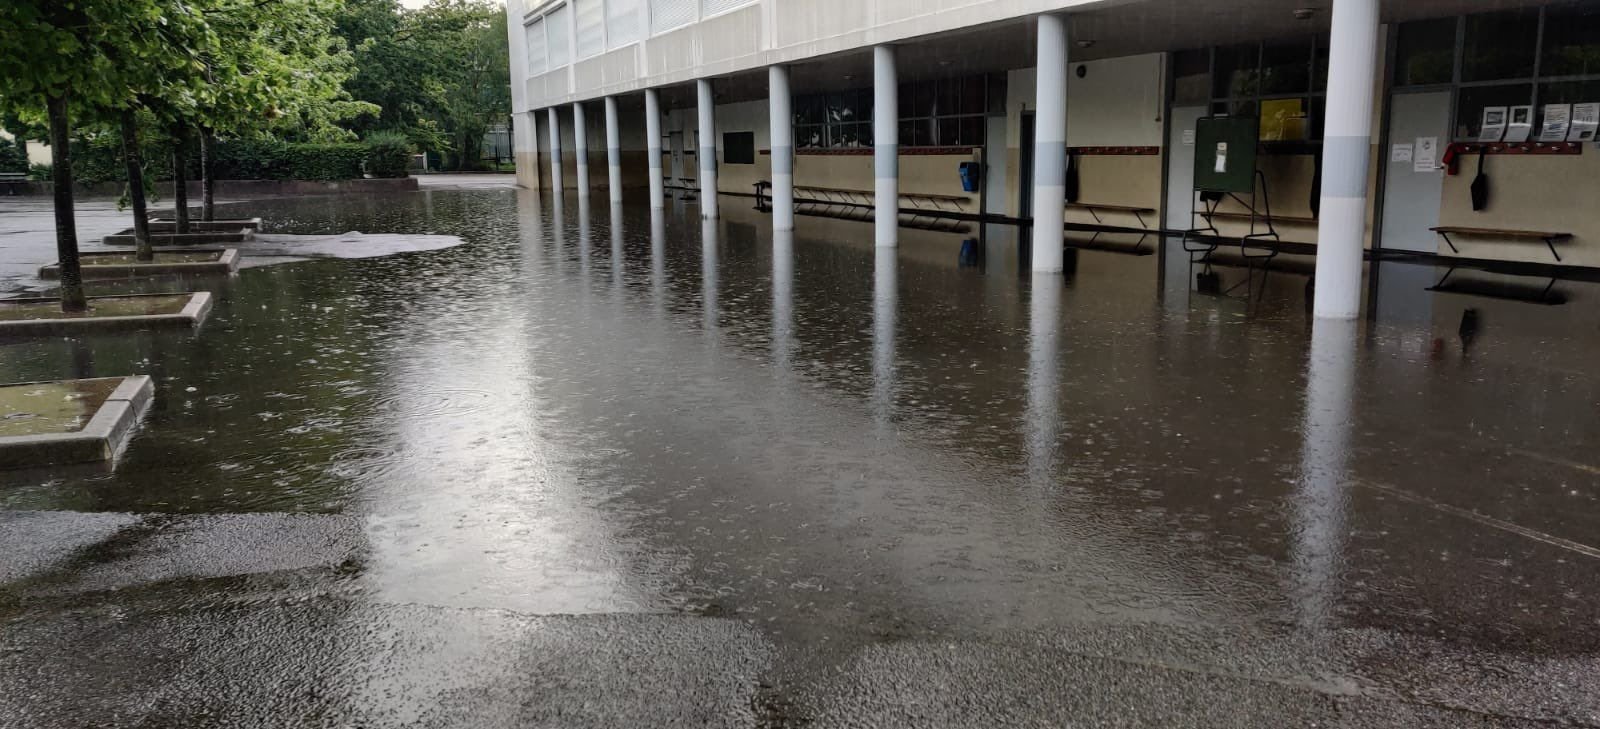 Yerres. Le préau de l'école Victor-Hugo a pris l'eau à cause des fortes pluies. Twitter/Olivier Clodong